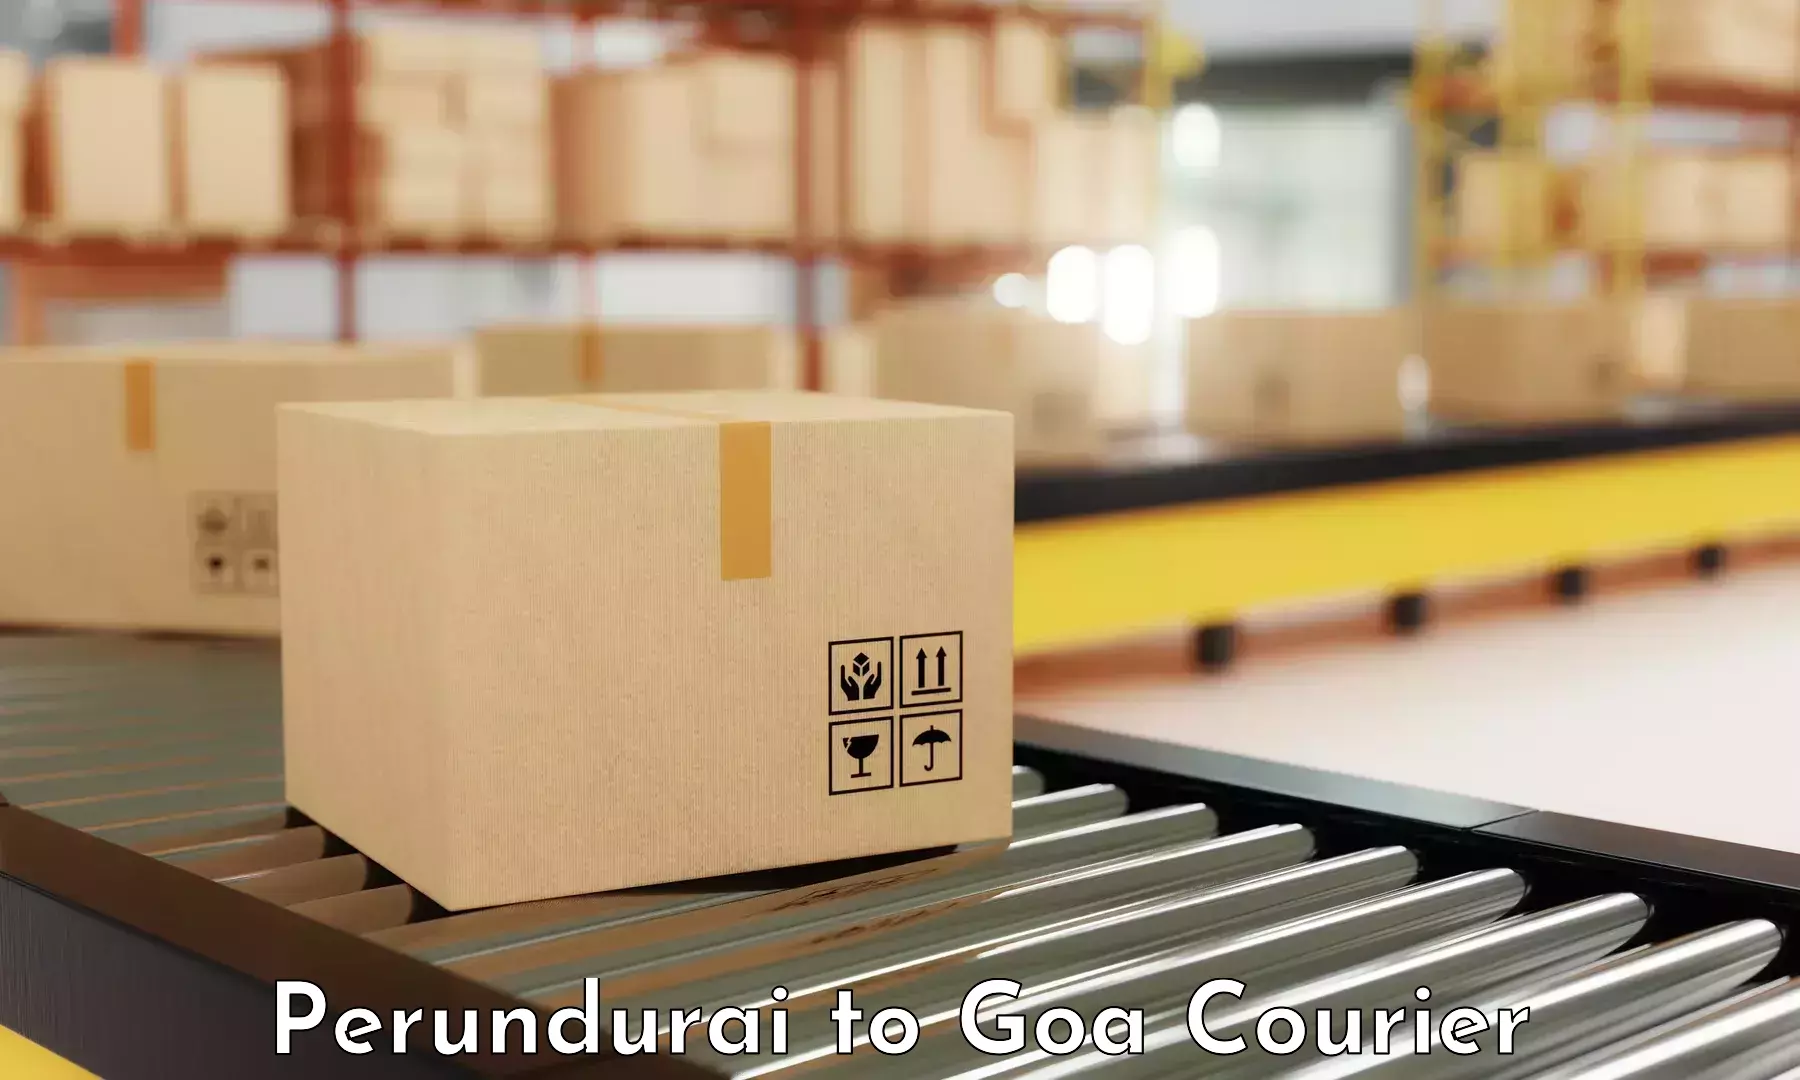 Urban courier service Perundurai to Bicholim